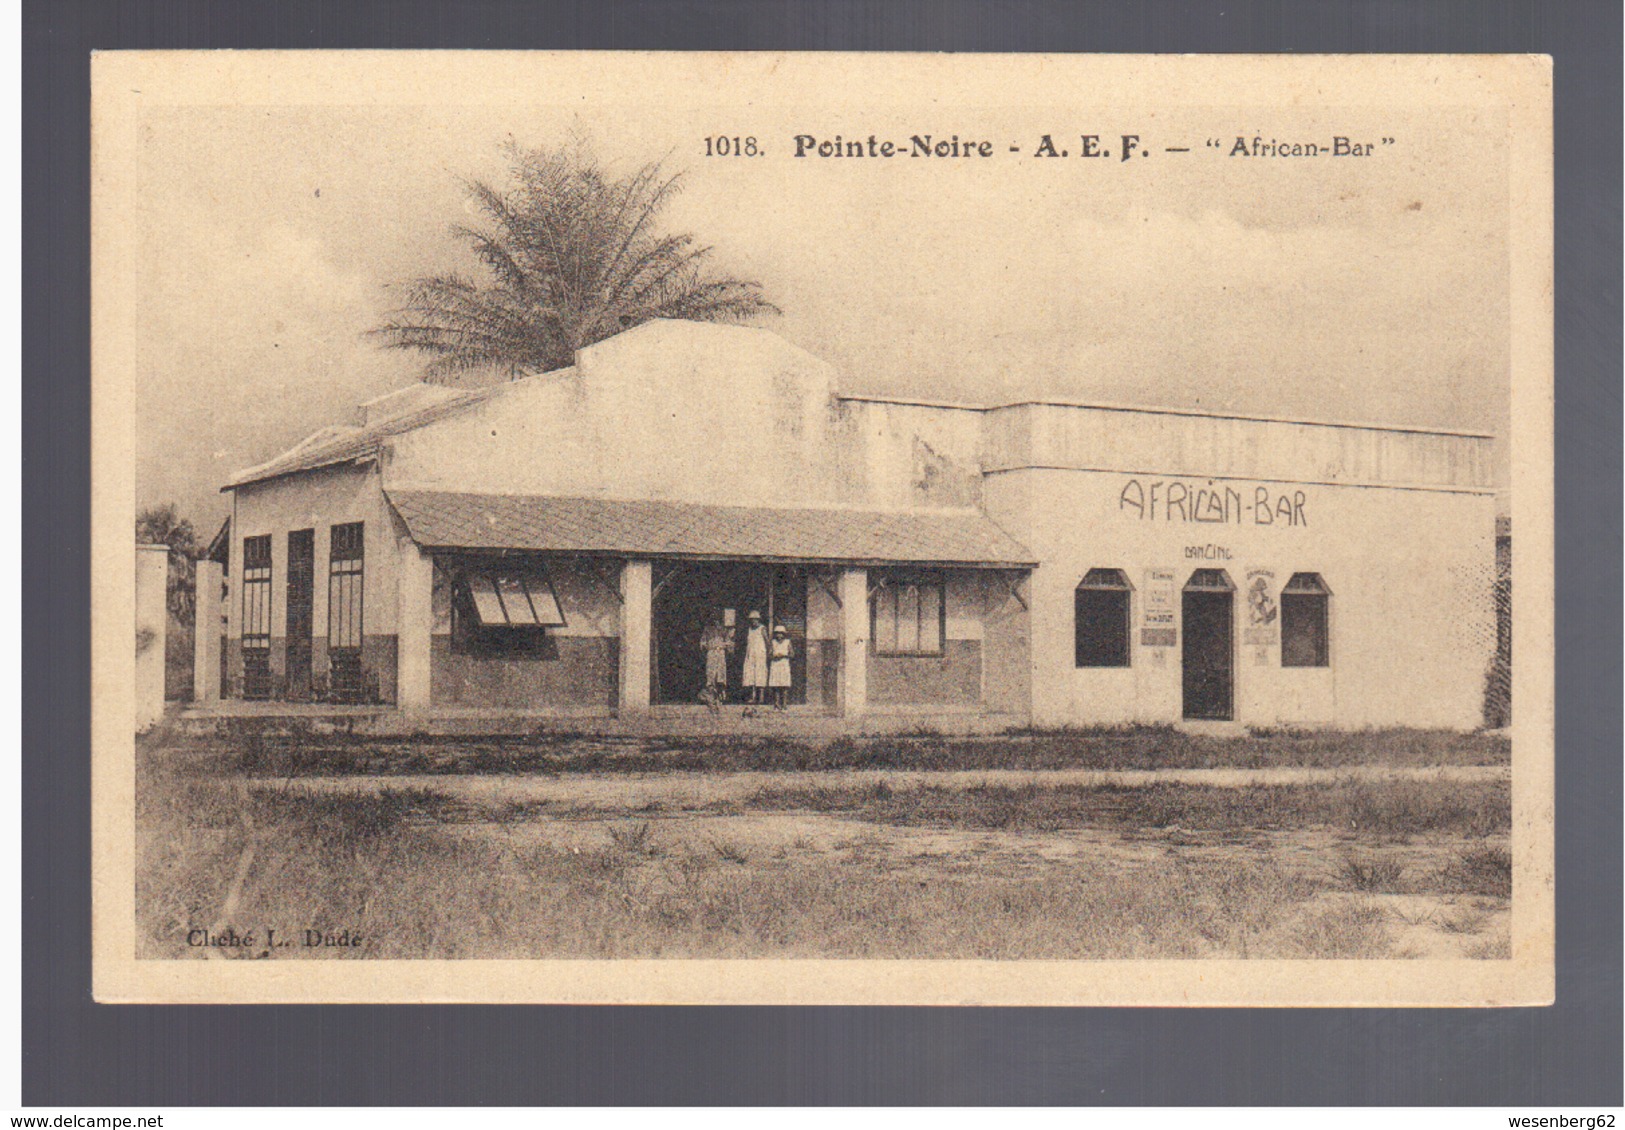 Congo Français Pointe Noire A E F "African- Bar" Ca 1920 Old Postcard - Pointe-Noire